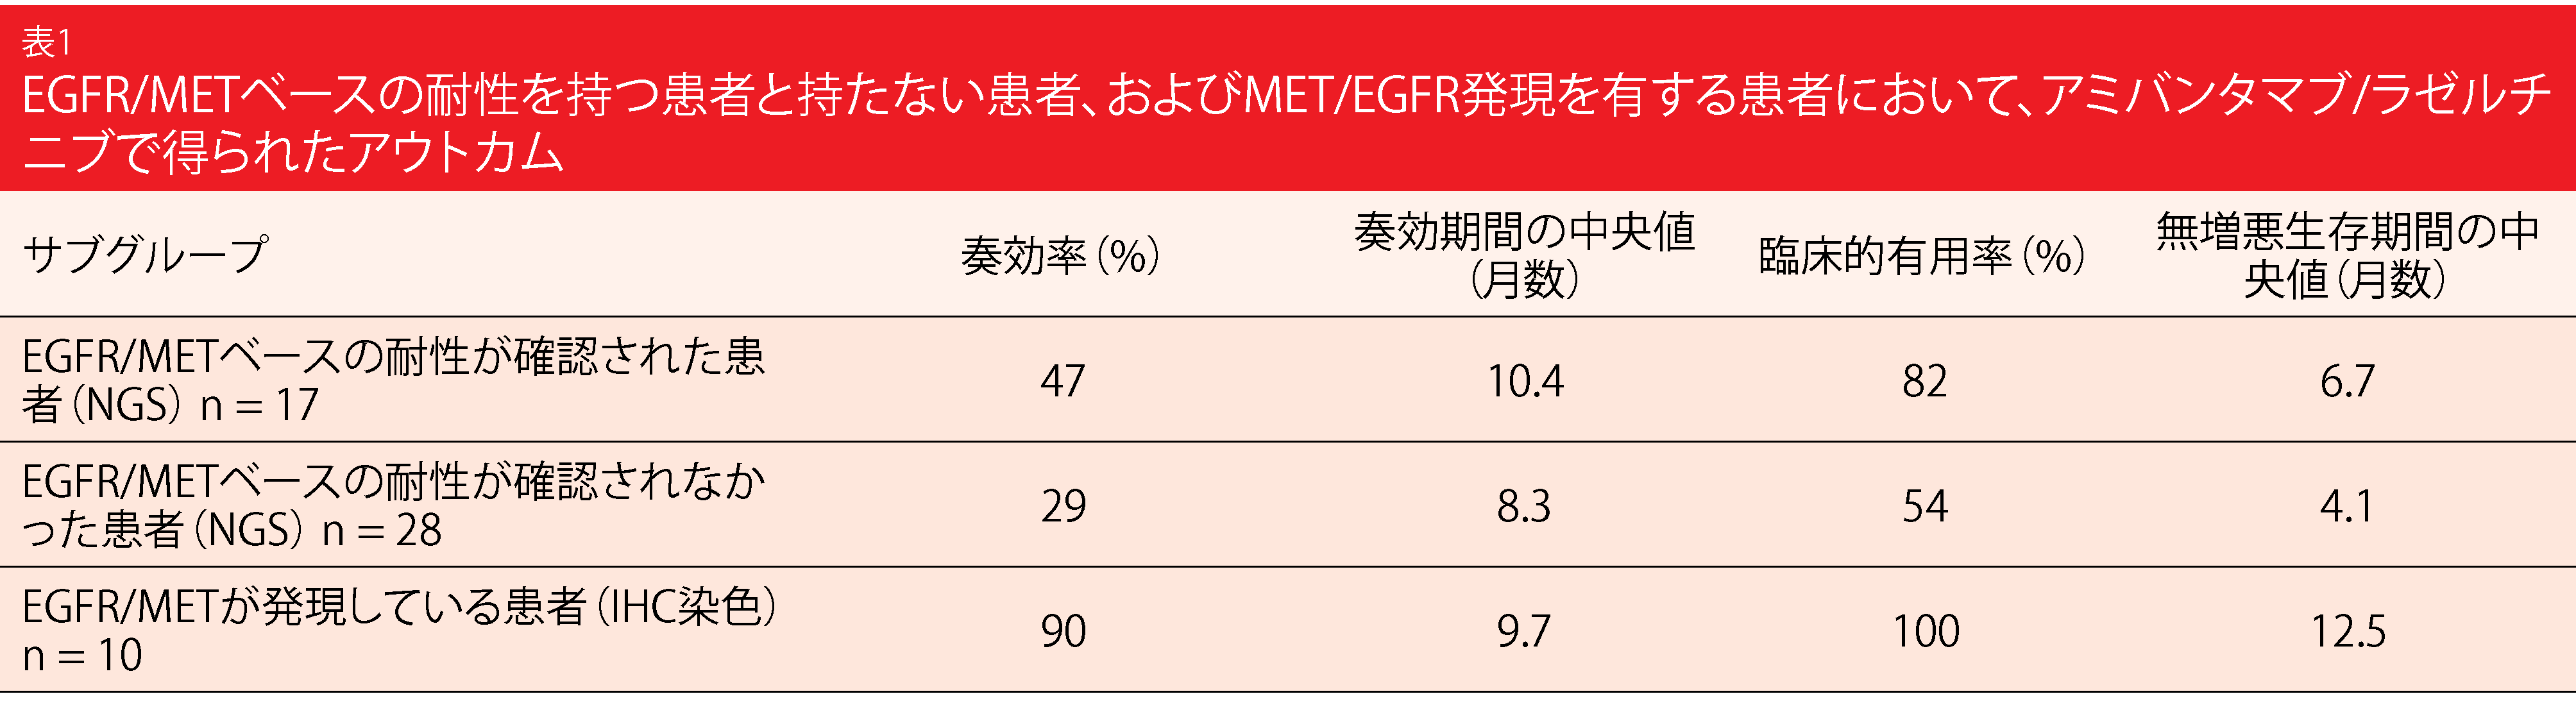 表1 EGFR/METベースの耐性を持つ患者と持たない患者、およびMET/EGFR発現を有する患者において、アミバンタマブ/ラゼルチニブで得られたアウトカム